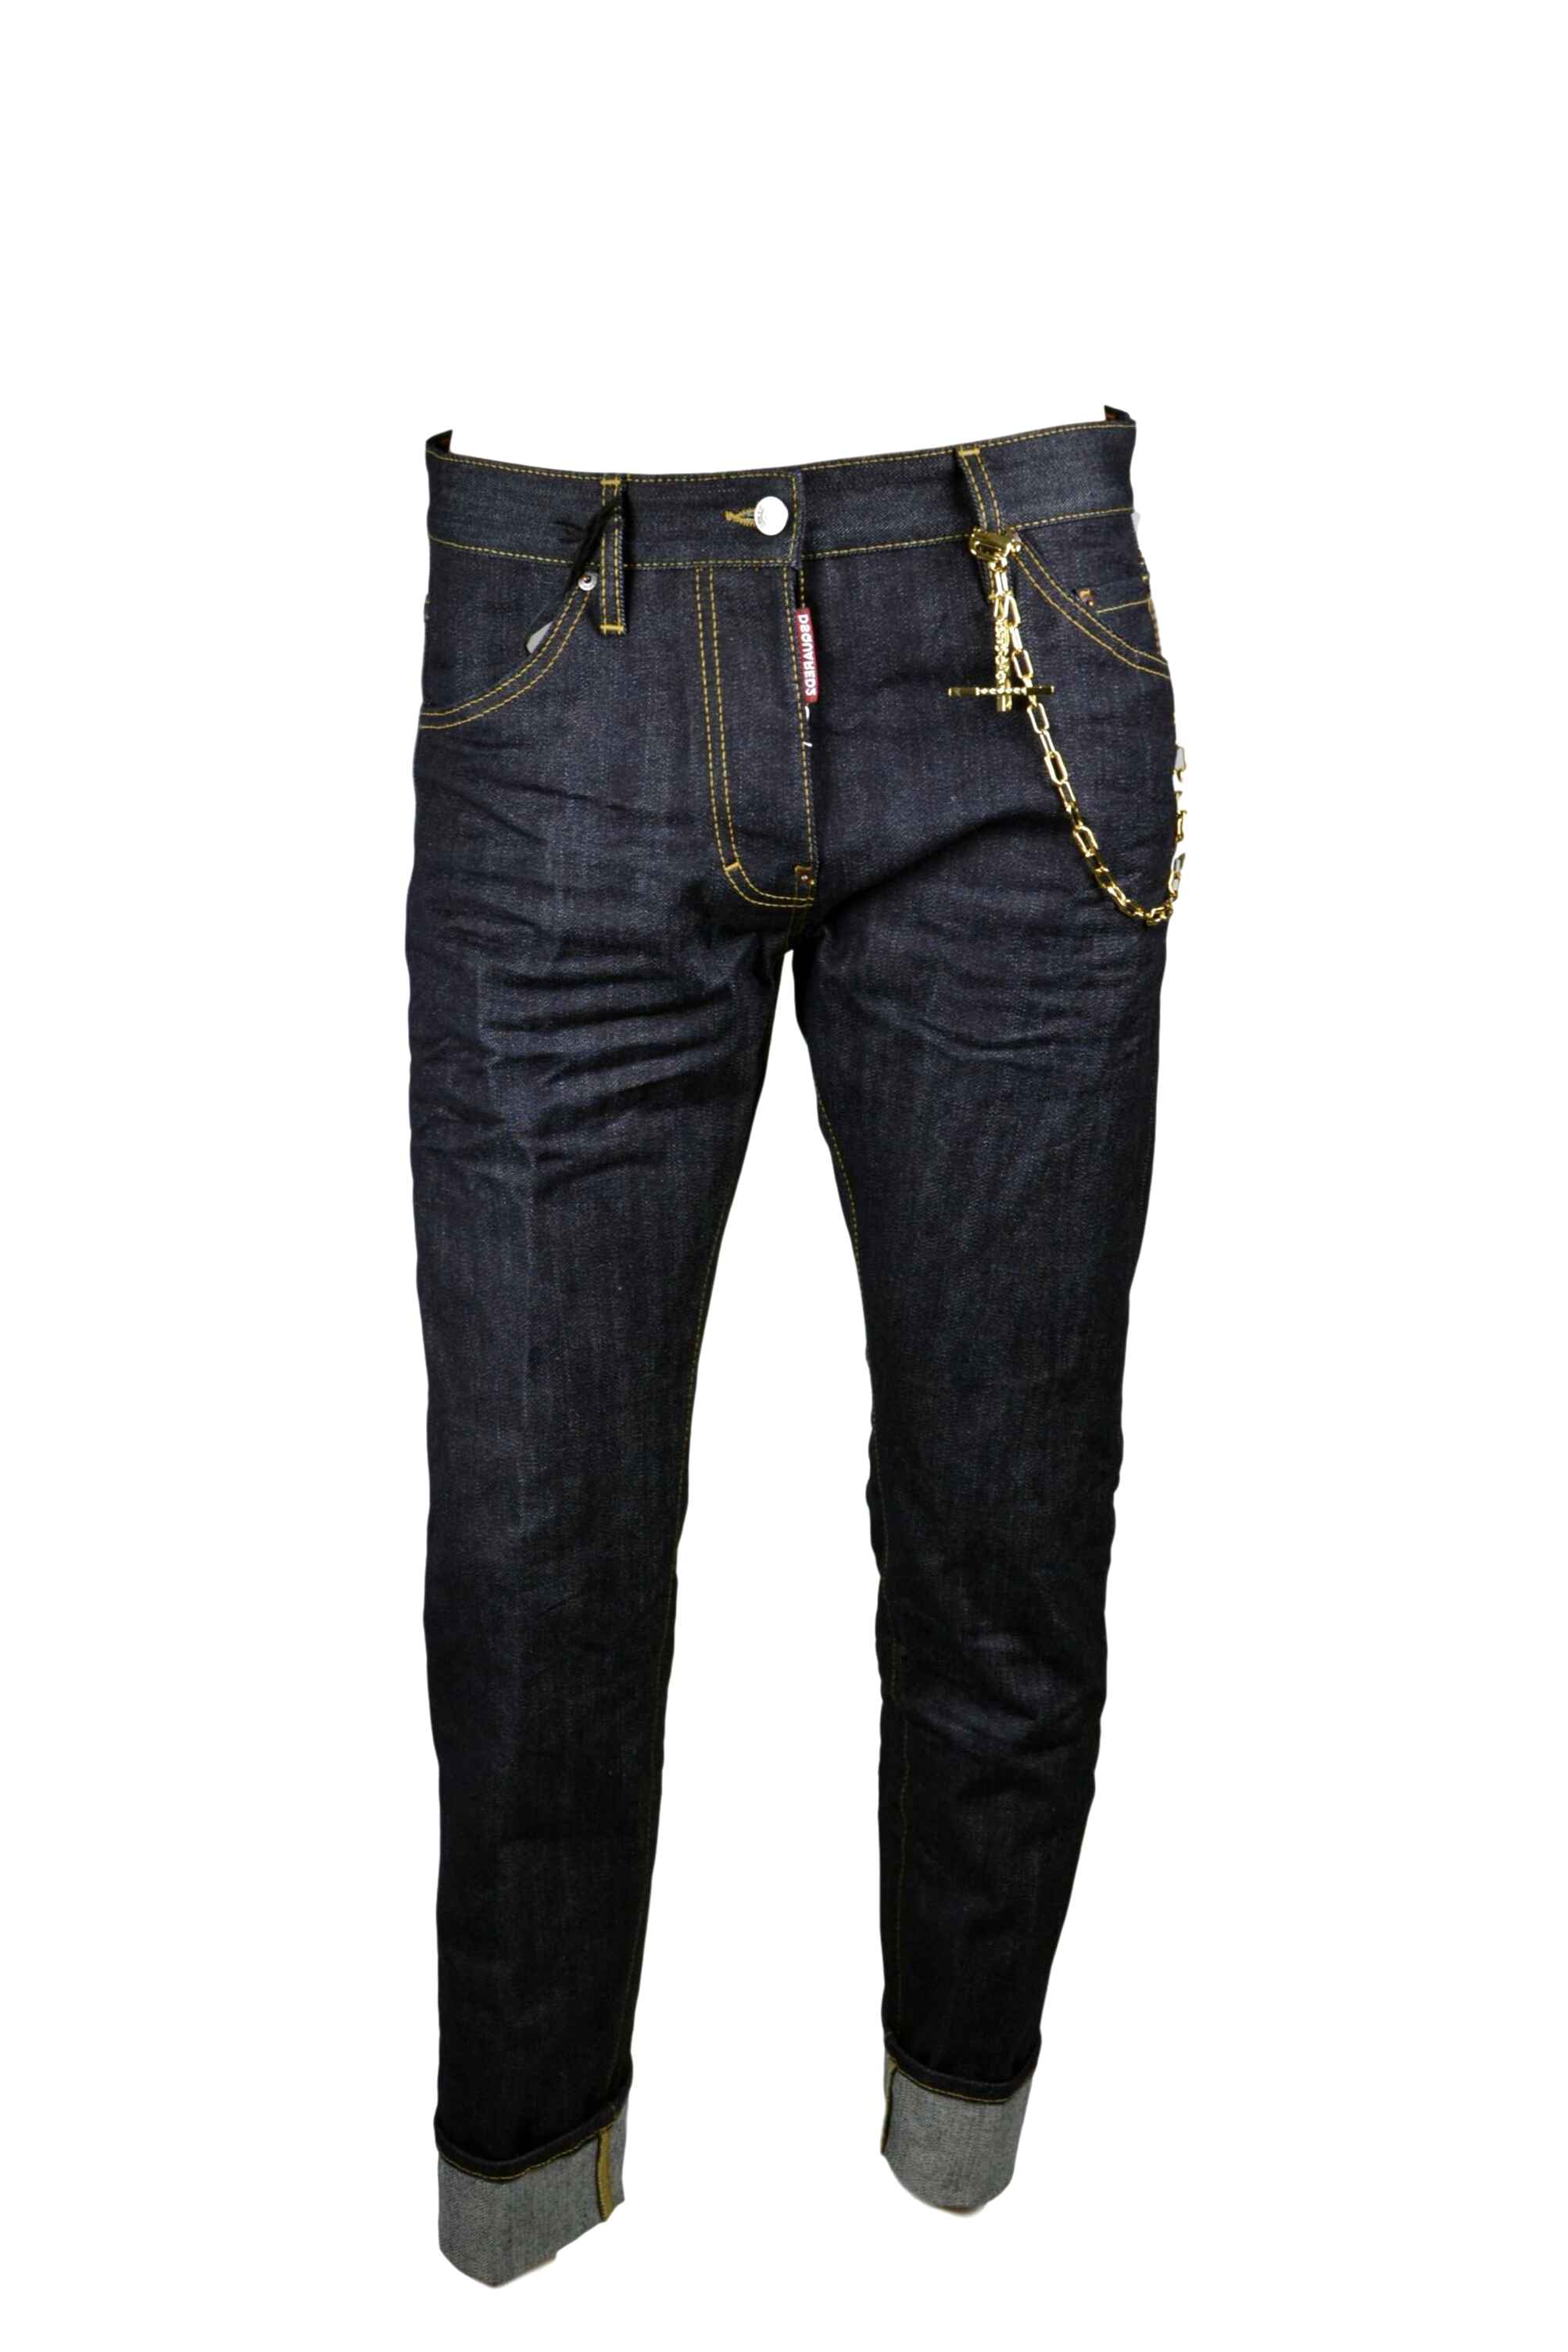 jeans dsquared uomo prezzi